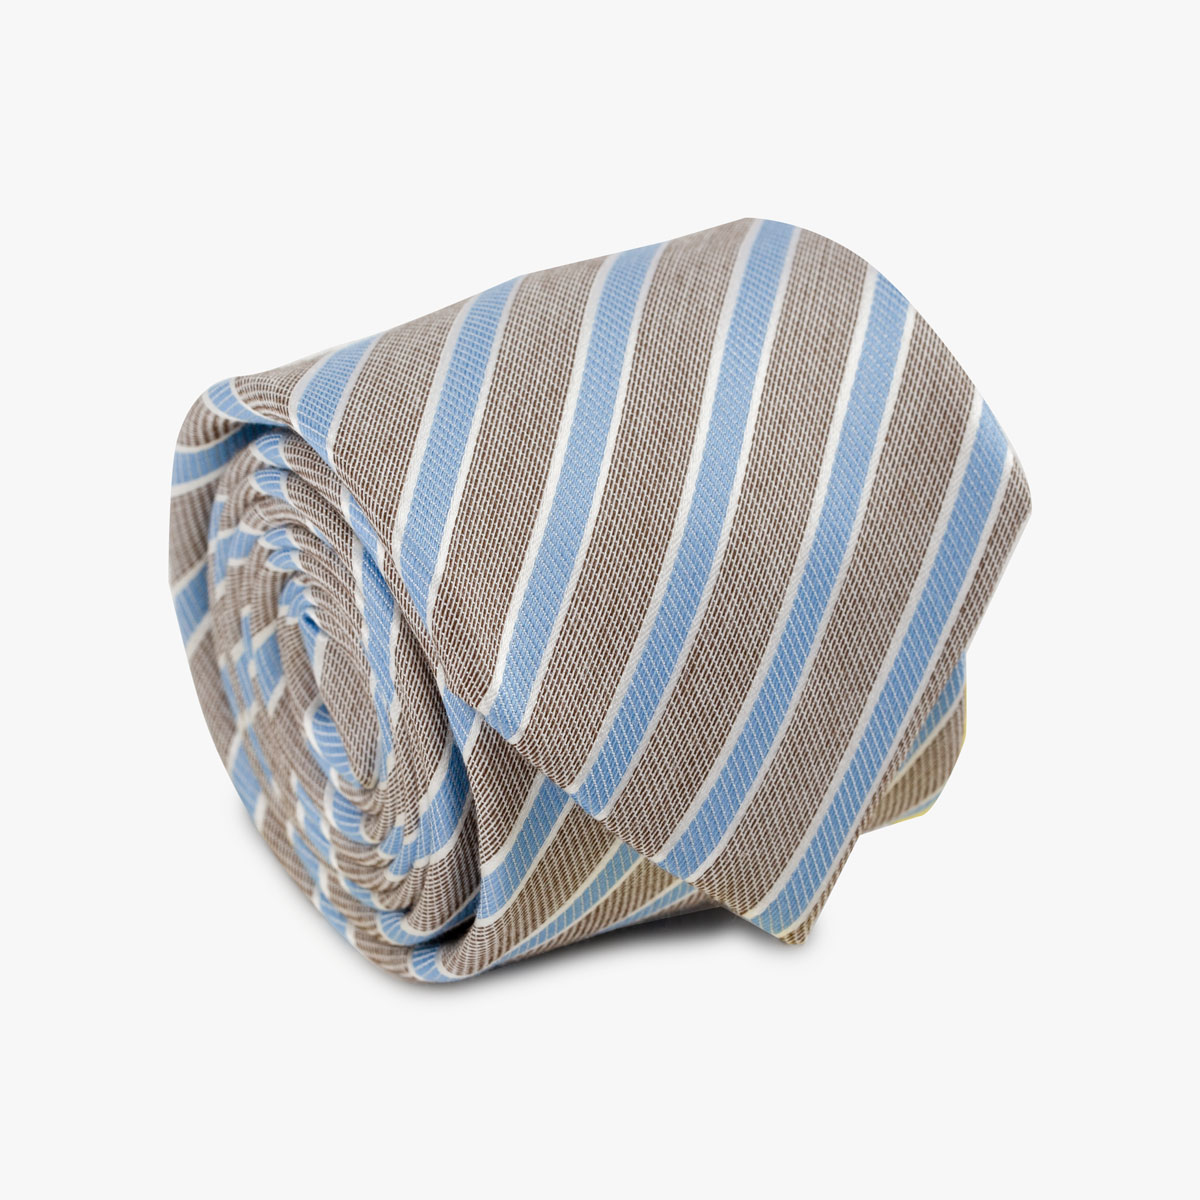 Aufgerollte Krawatte gestreift in braun und blau